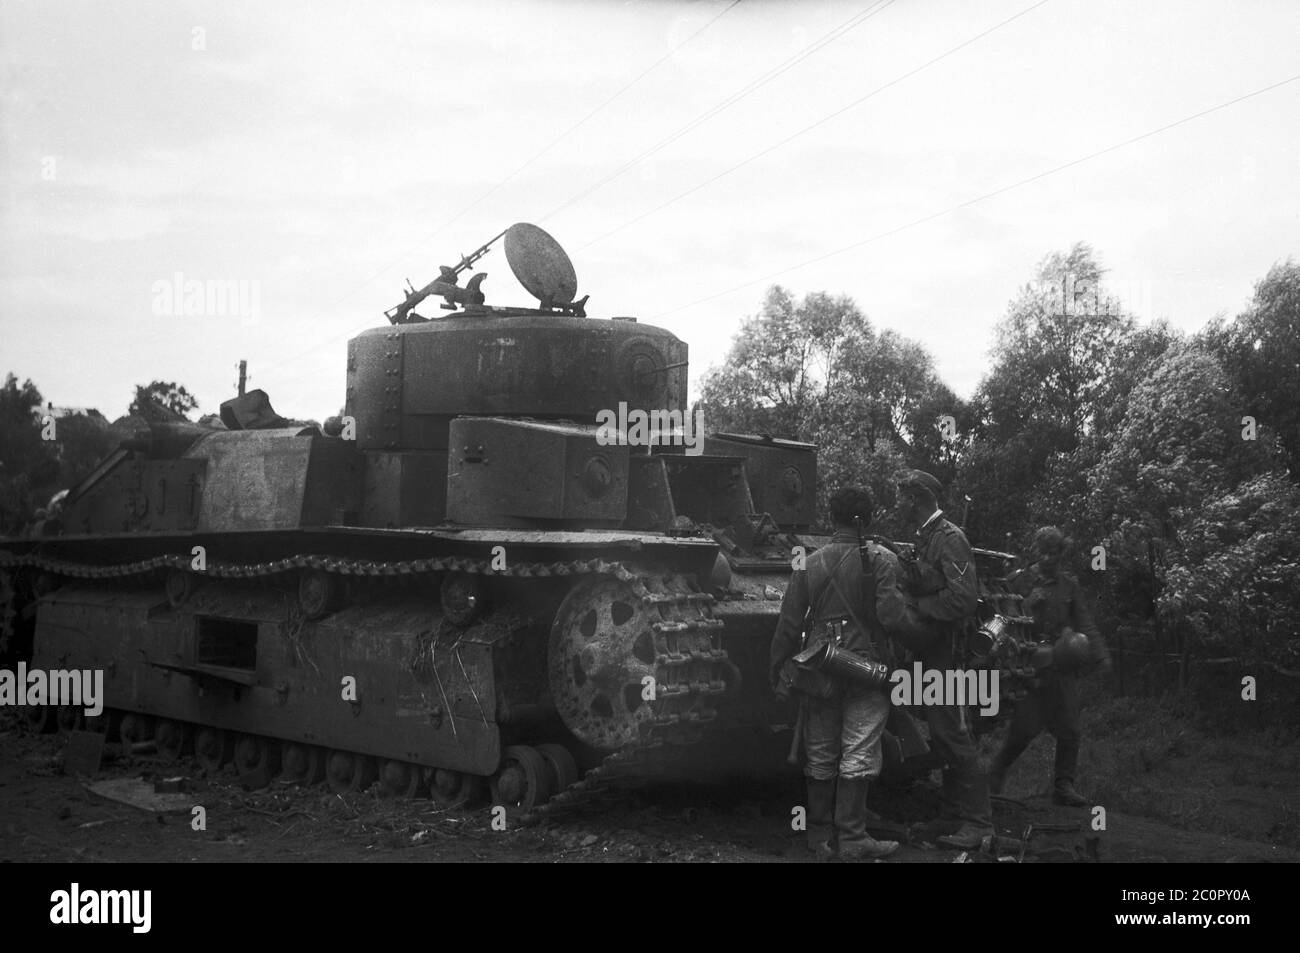 Armee par cœur – Ostfront - Mittlerer Panzer T-28 - char de l'Armée rouge T-28 Banque D'Images